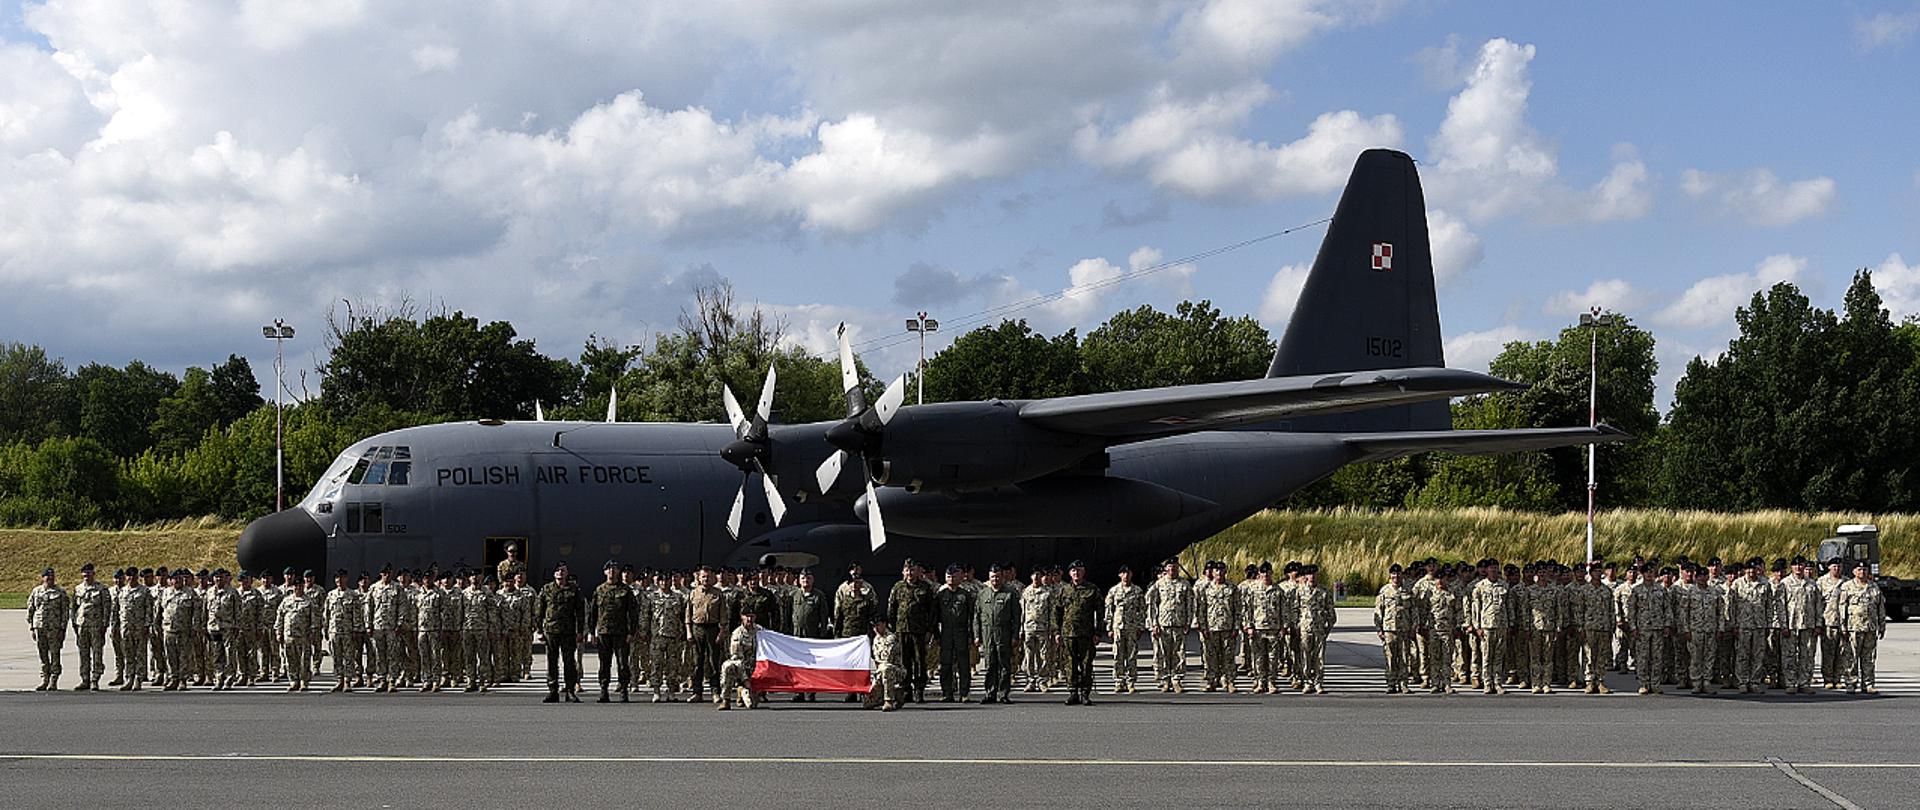 Powrót Polskiego Kontyngentu Wojskowego z Afganistanu_powitanie żołnierzy we Wrocławiu 